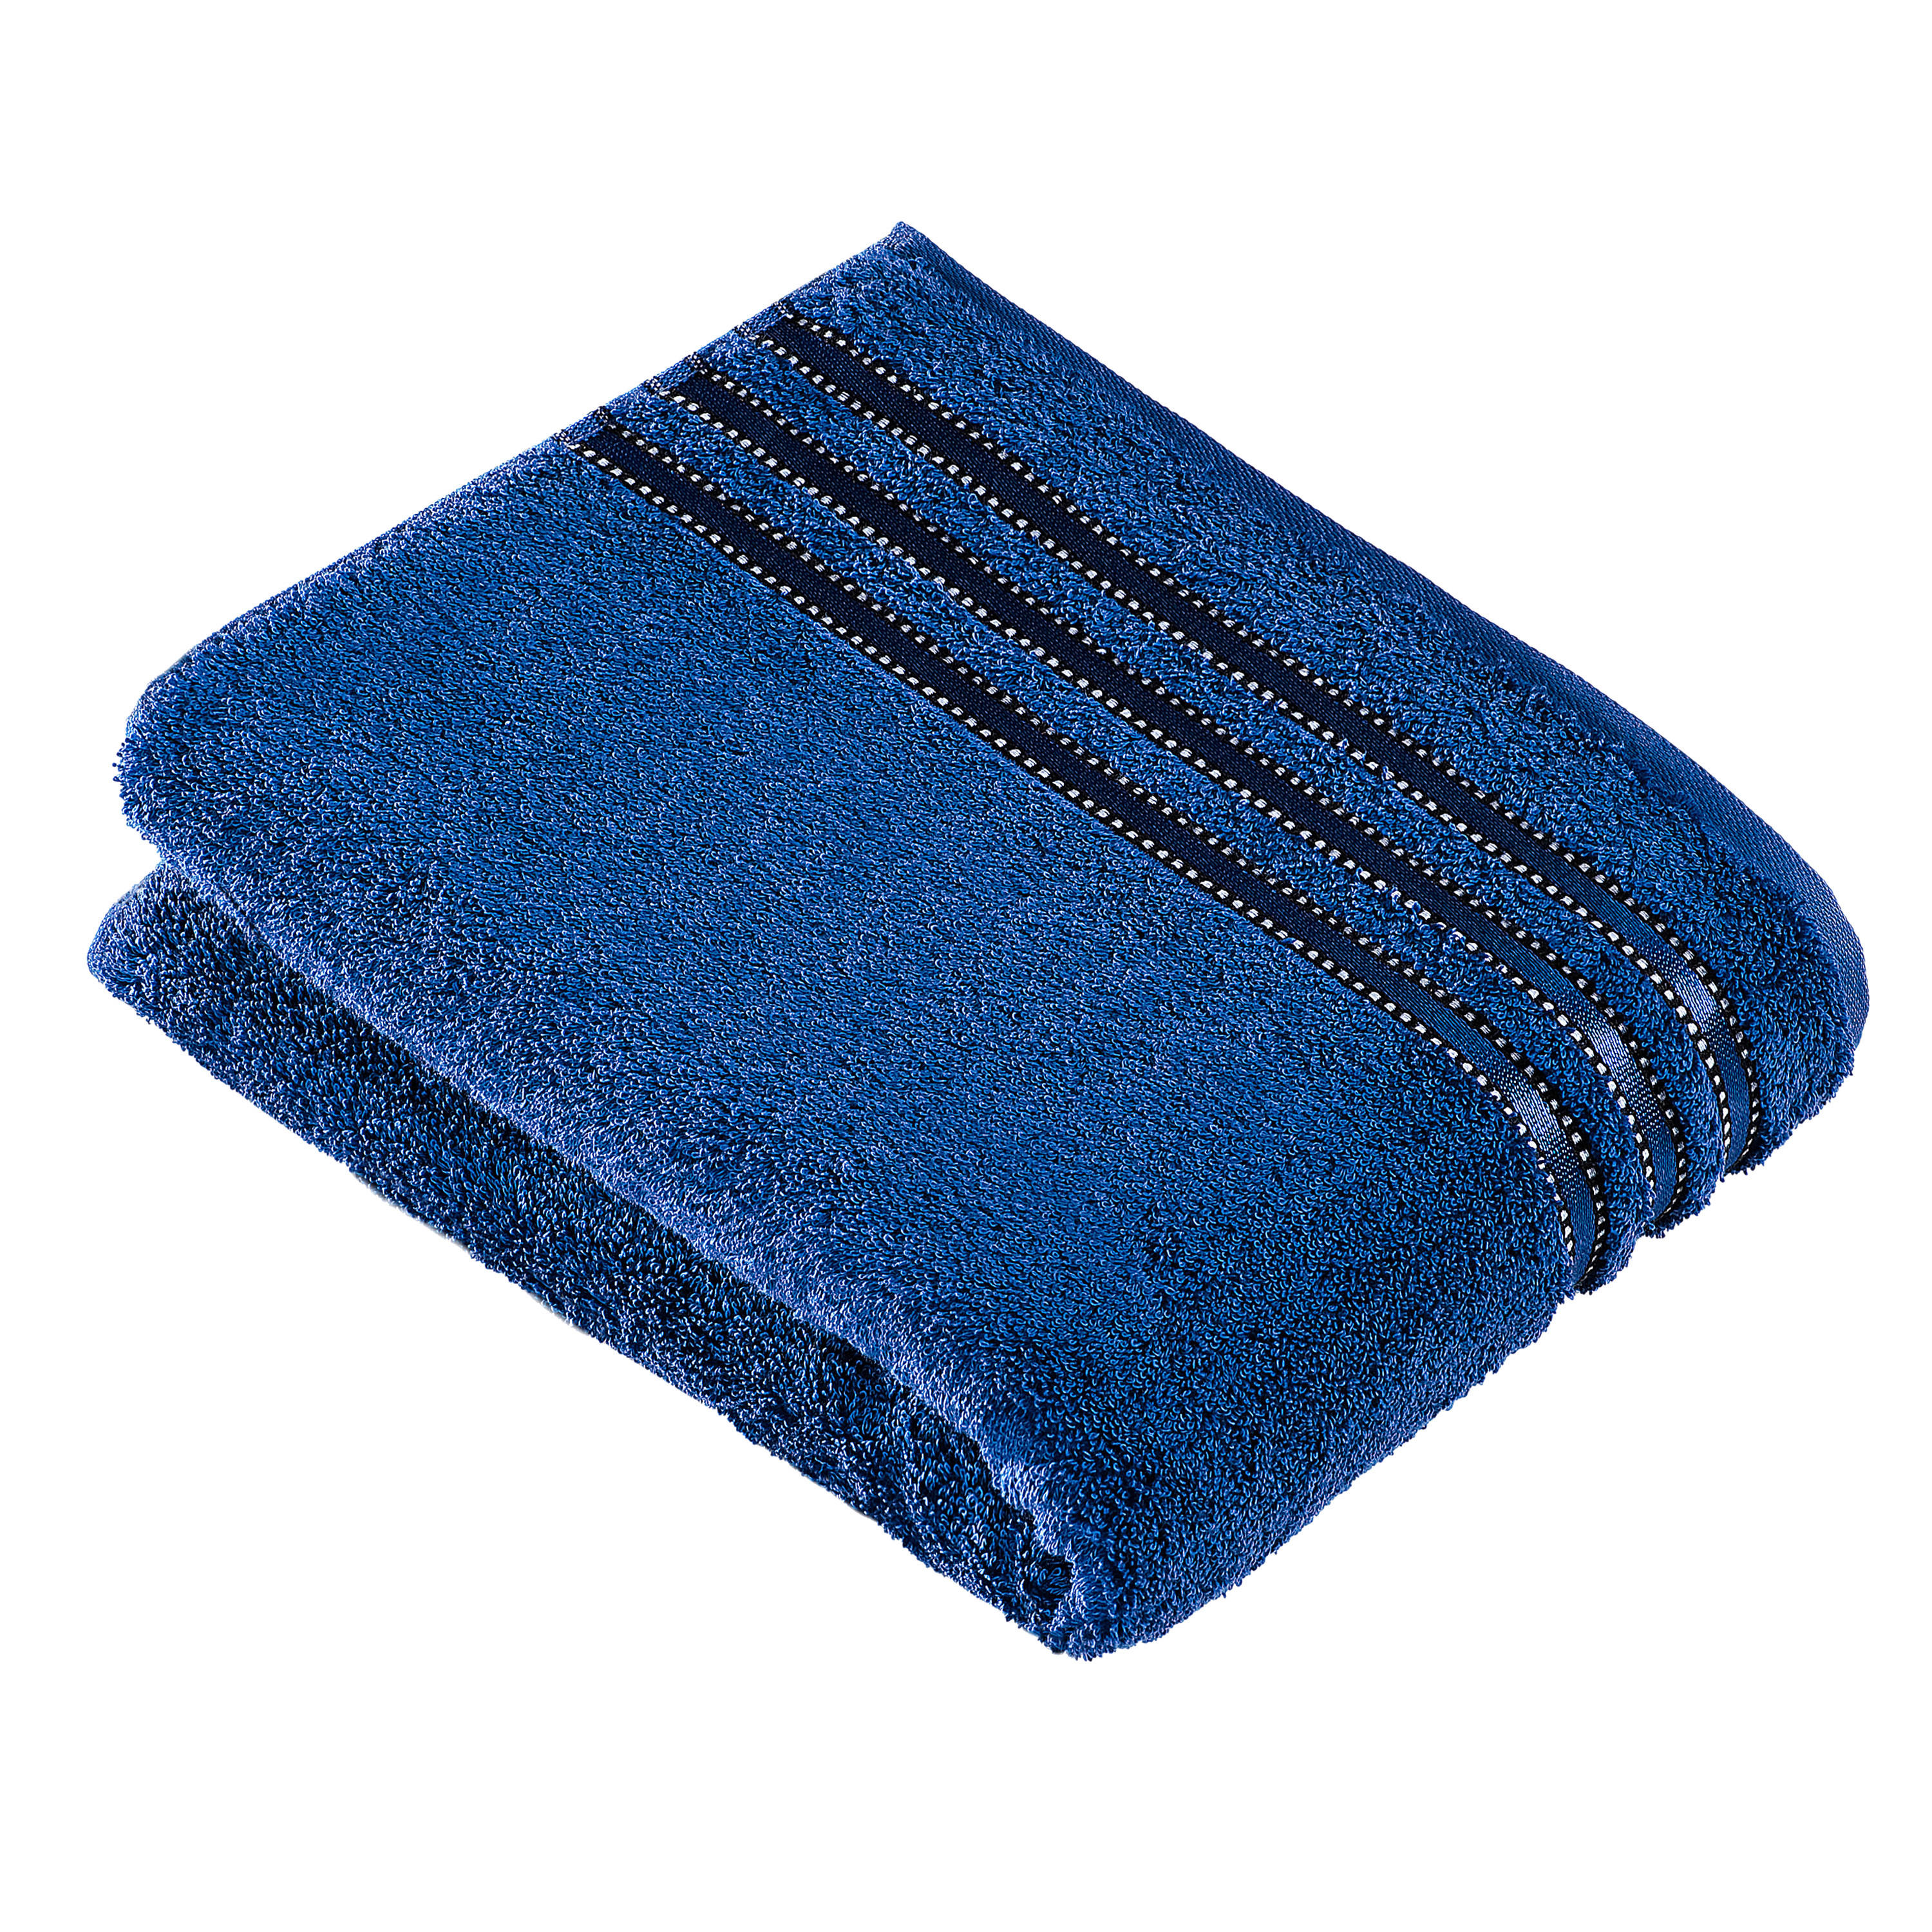 BADETUCH Cult de Luxe NOS Vossen Wäsche 150/100 cm  - Blau, Basics, Textil (150/100cm) - Vossen